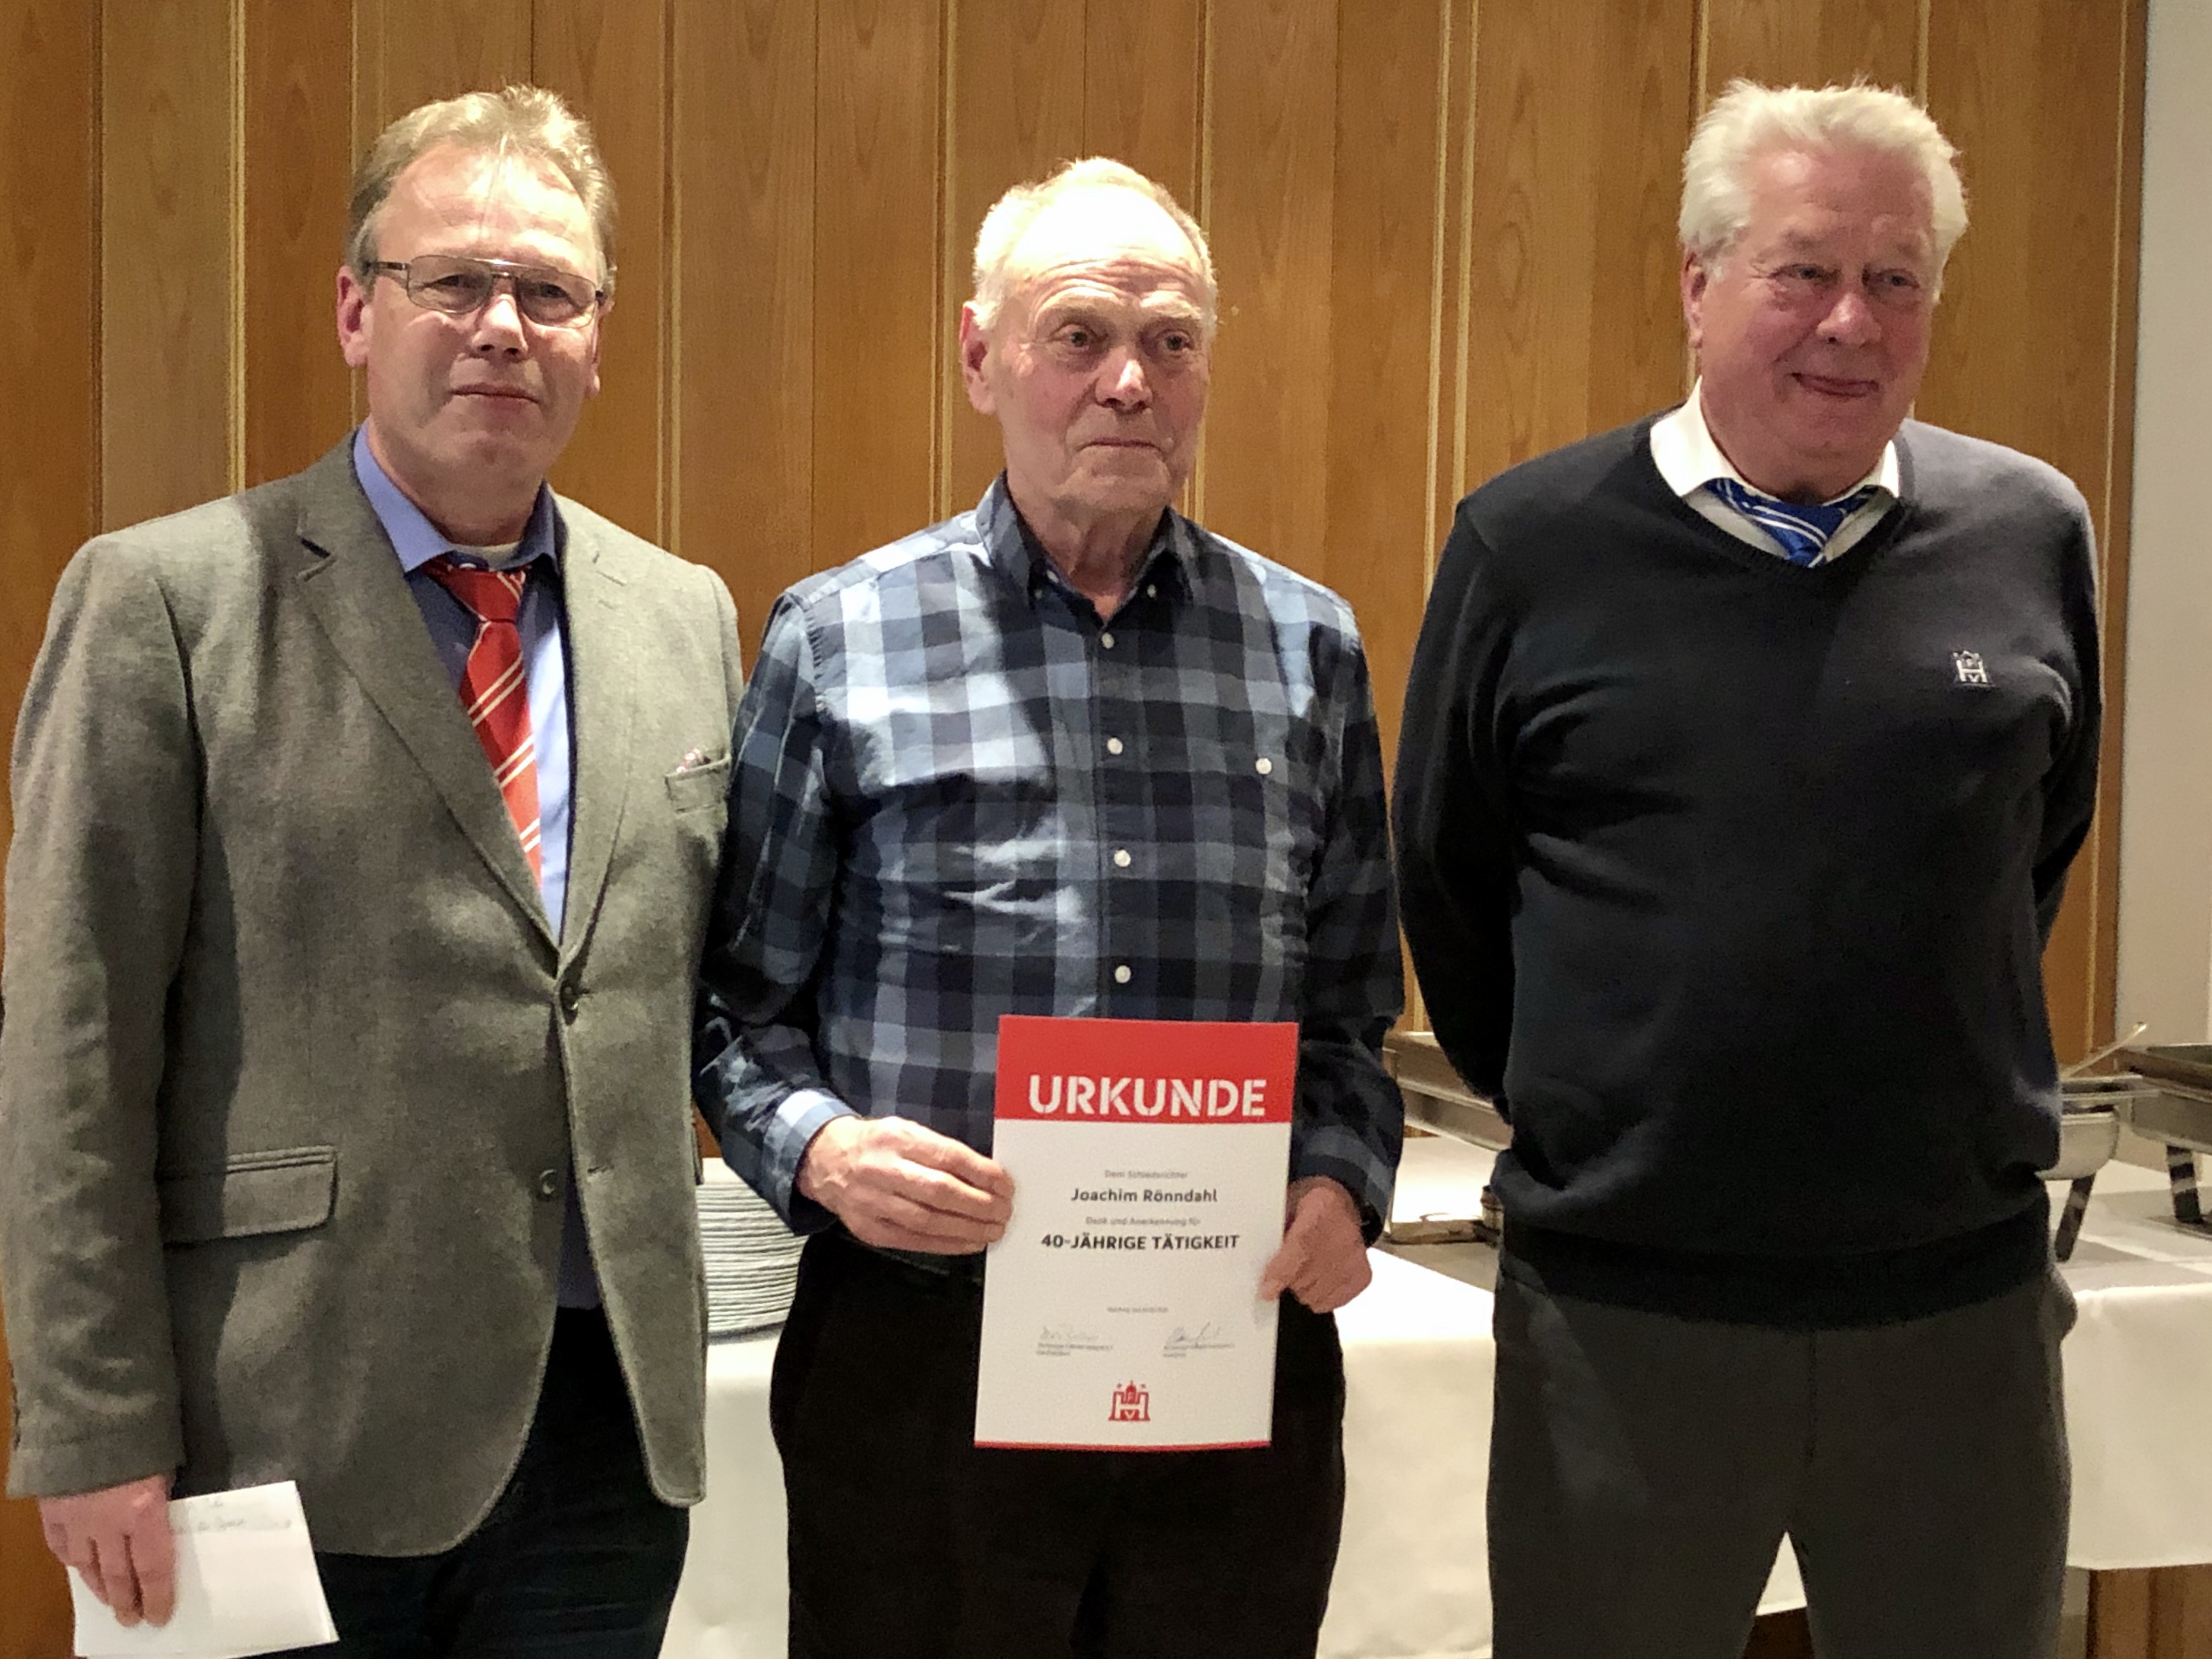 V.l.n.r.: Frank Behrmann, Jochen Rönndahl und Willi Deckert.